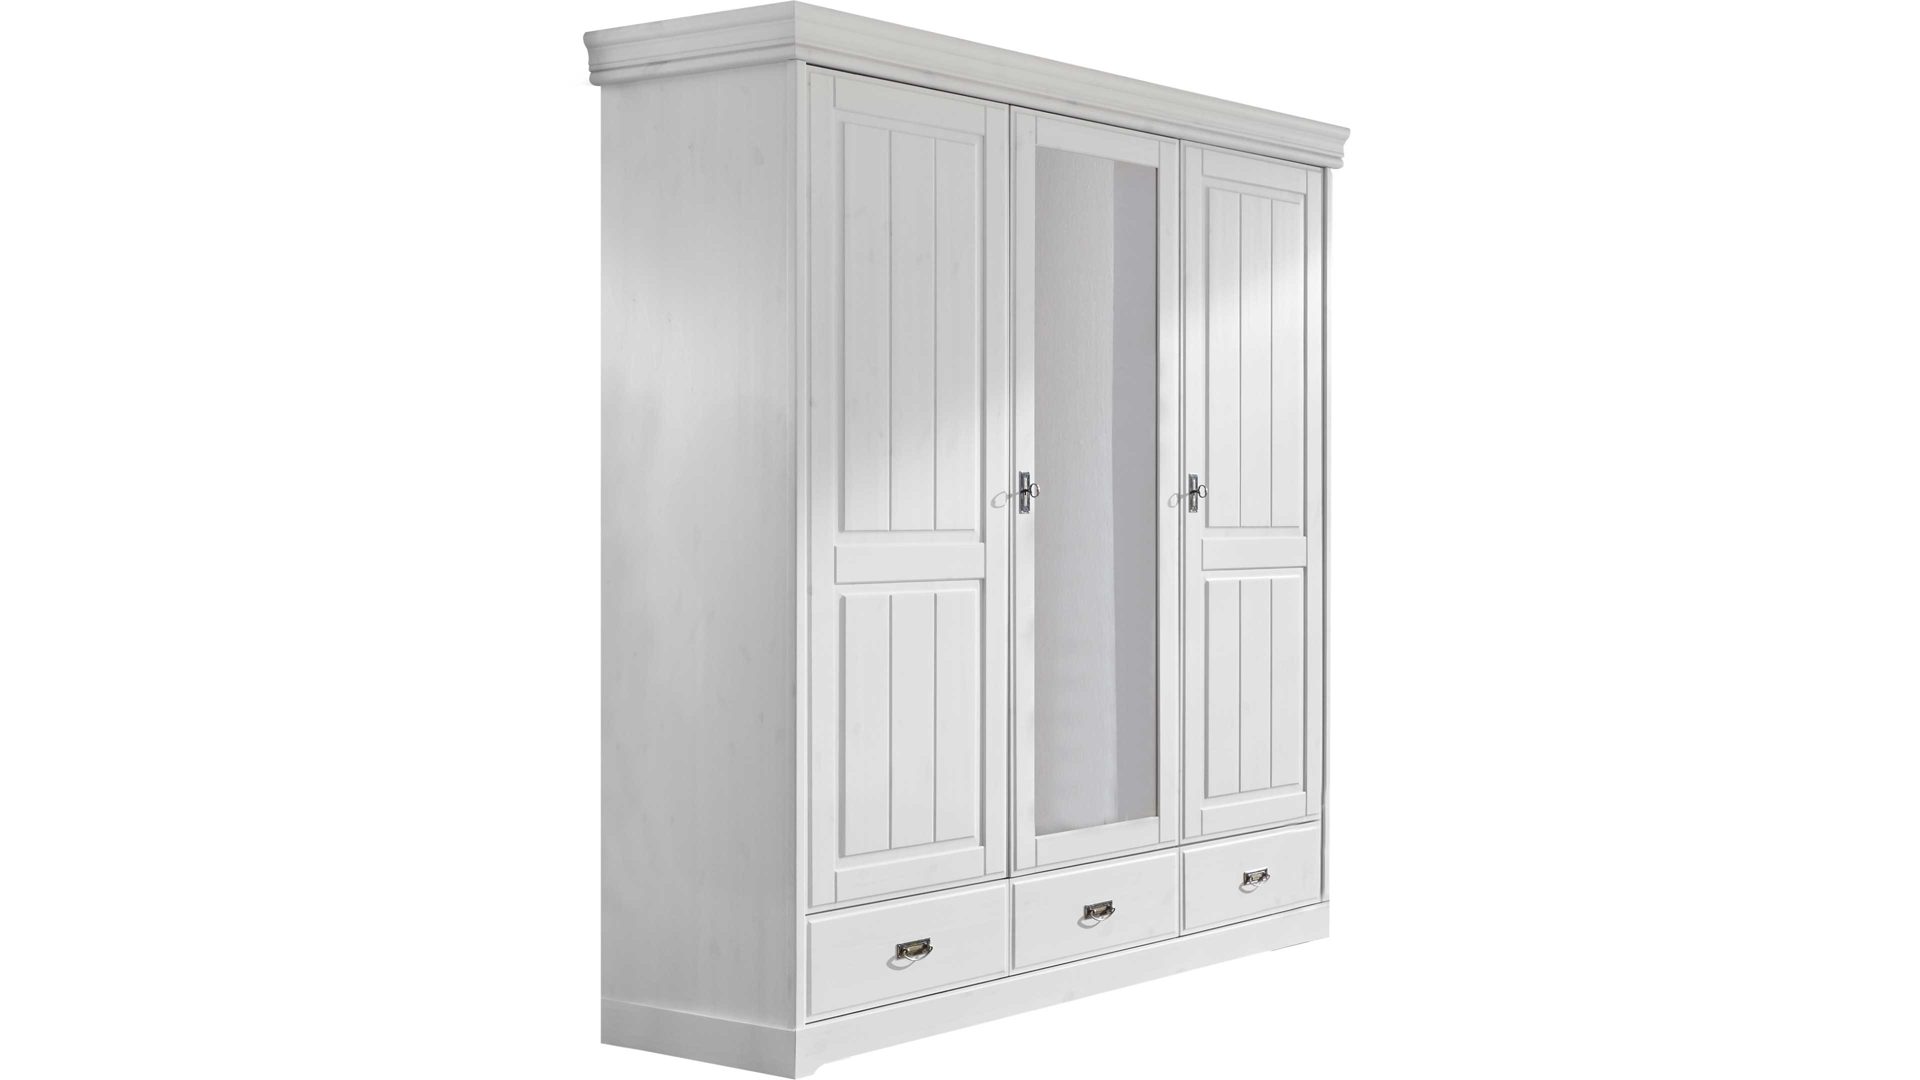 Kleiderschrank 3s frankenmöbel aus Holz in Weiß 3S frankenmöbel Rom - Kleiderschrank Drehtürenschrank Weiß – drei Türen, drei Schubladen, Breite ca. 192 cm